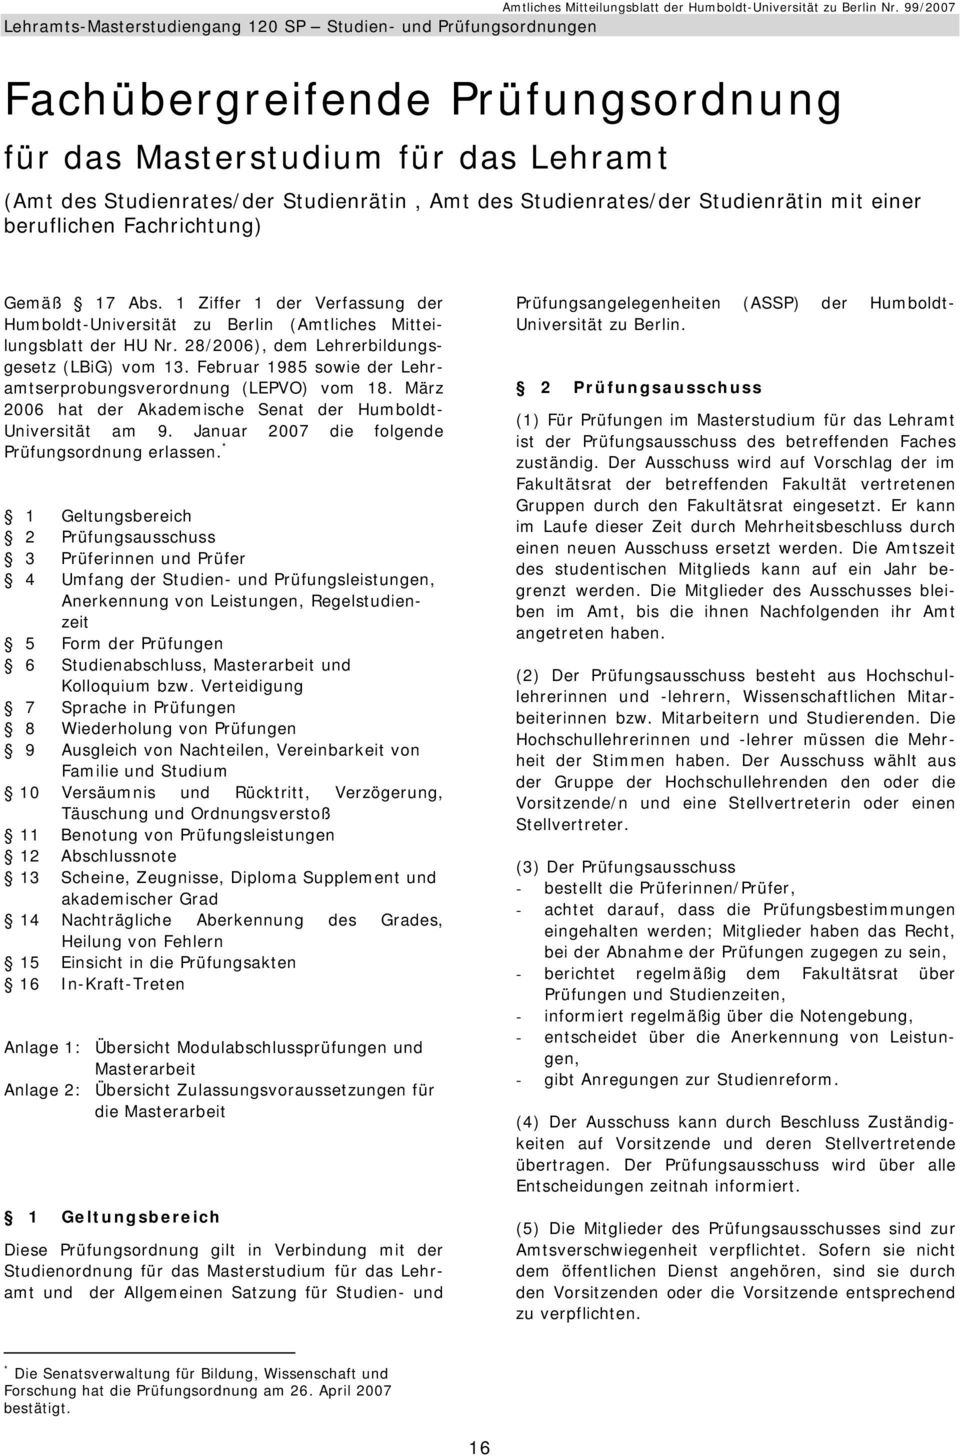 Februar 1985 sowie der Lehramtserprobungsverordnung (LEPVO) vom 18. März 2006 hat der Akademische Senat der Humboldt- Universität am 9. Januar 2007 die folgende Prüfungsordnung erlassen.